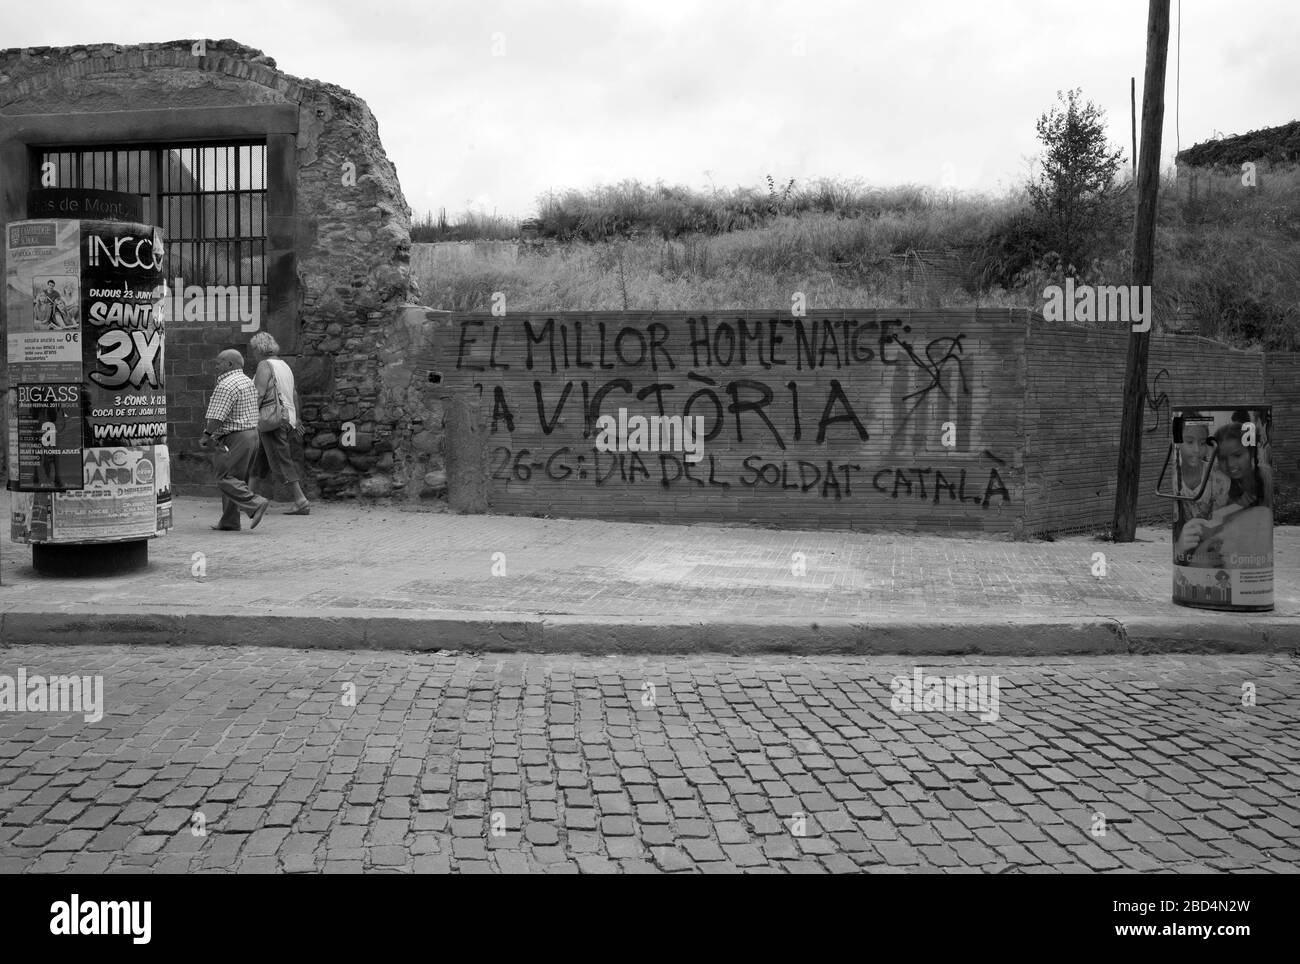 Graffiti politici/catalani sul muro a Caldes de Montbui, Catalogna, Spagna Foto Stock